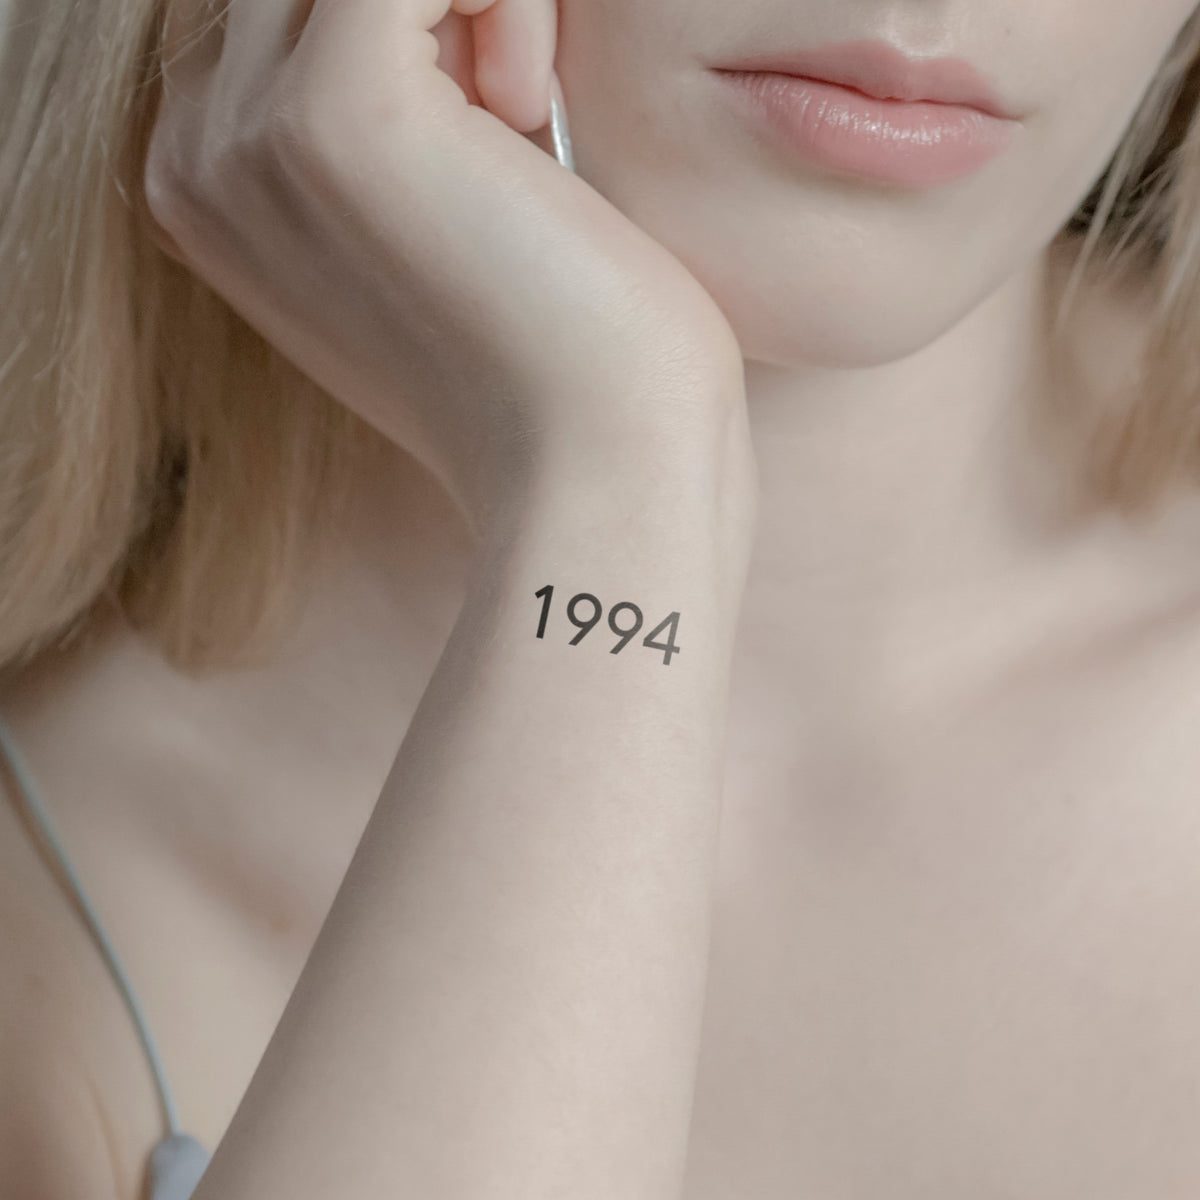 Tattoo 1994 | Back of neck tattoo, Neck tattoos women, Word neck tattoos